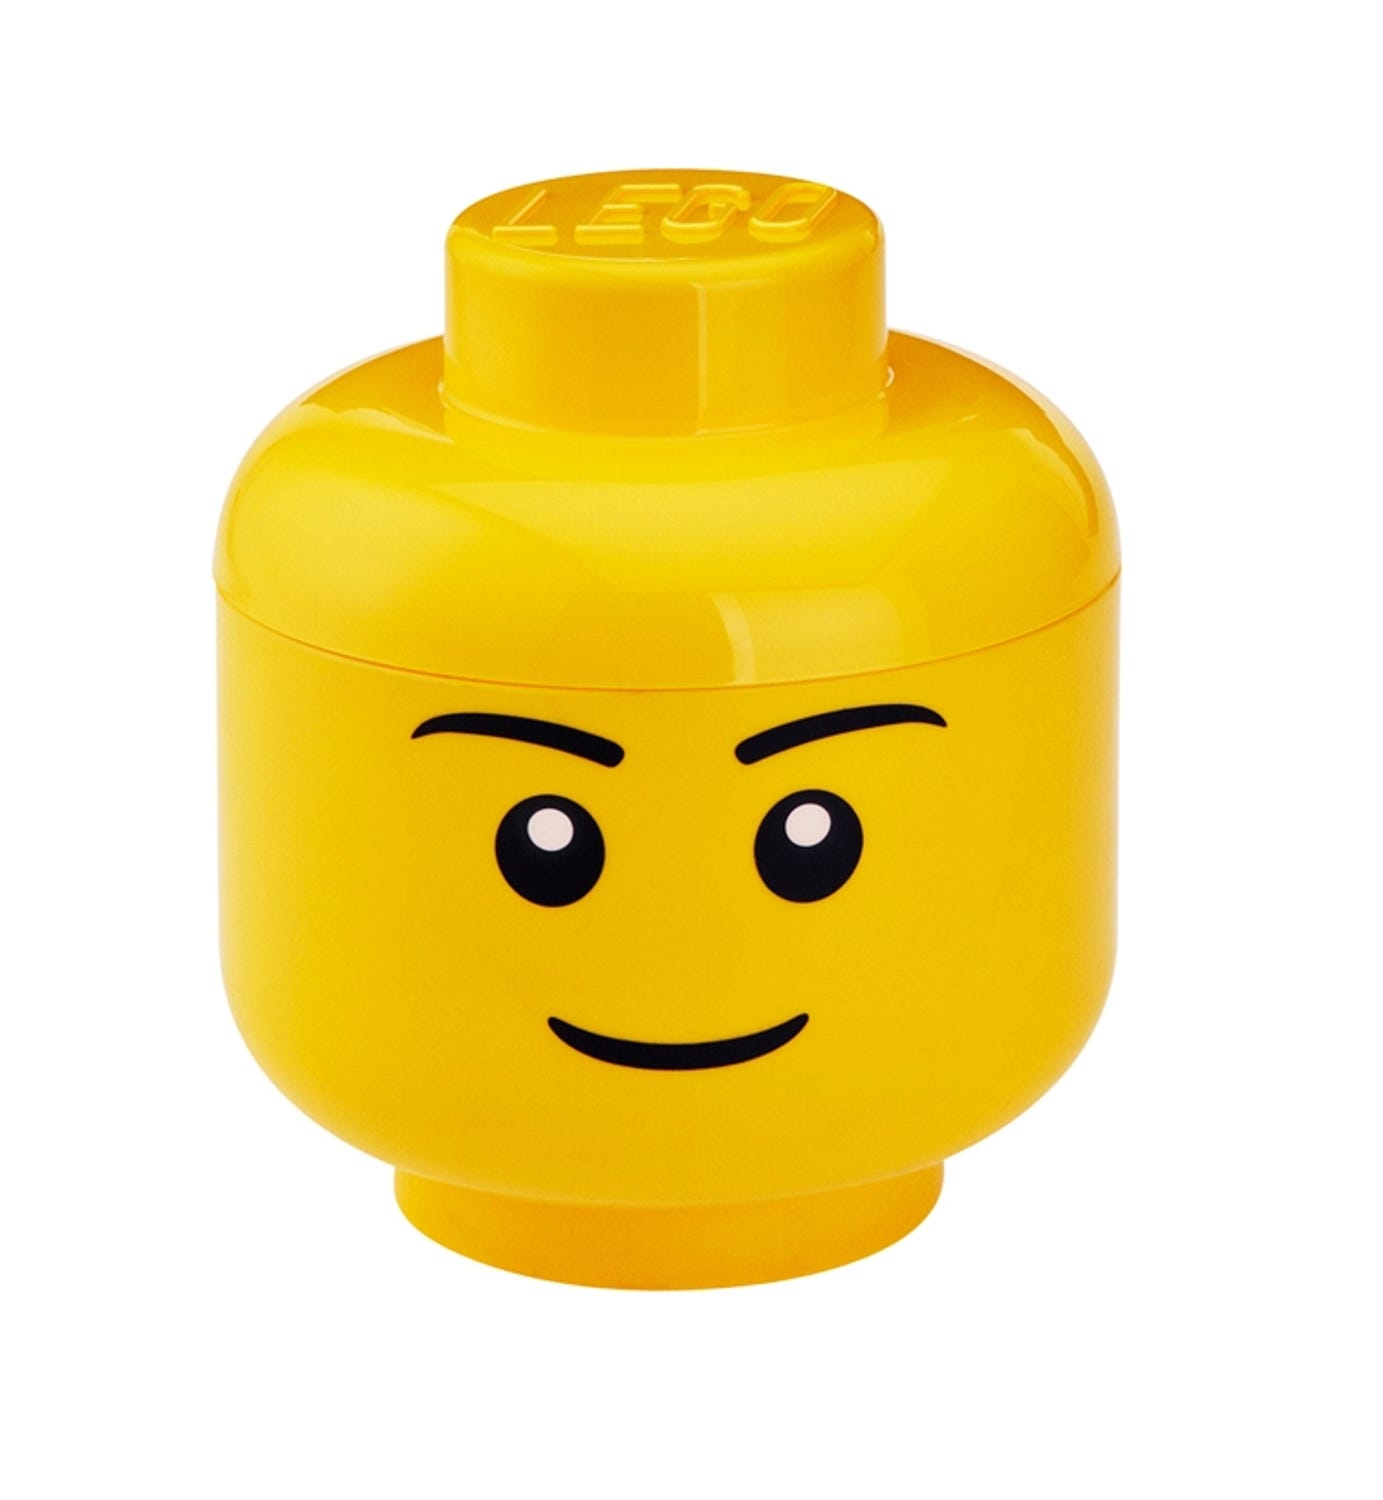 Lego Big Boy - KibrisPDR